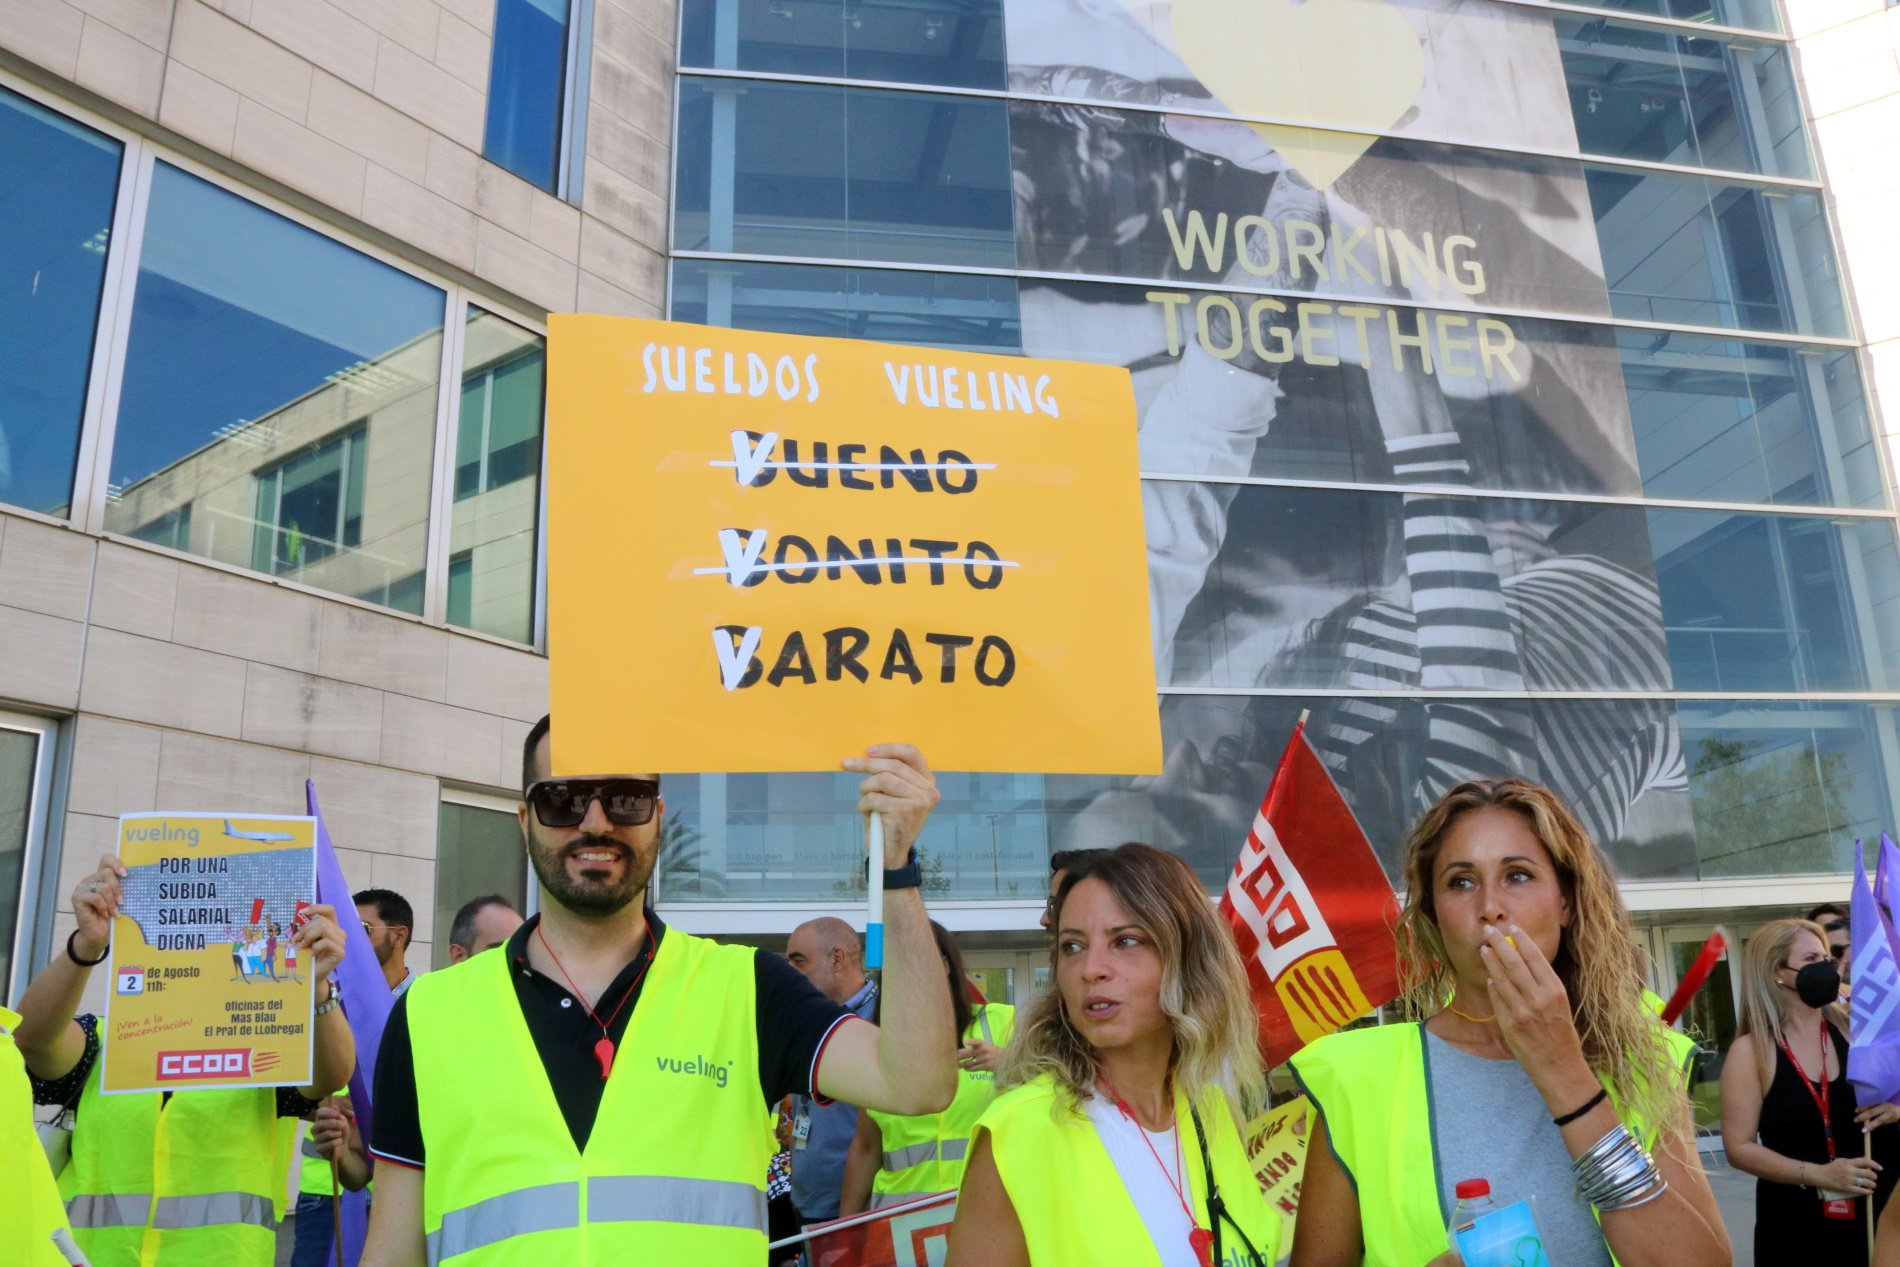 Cancel·lats 29 vols al Prat per la vaga dels tripulants de cabina de Vueling